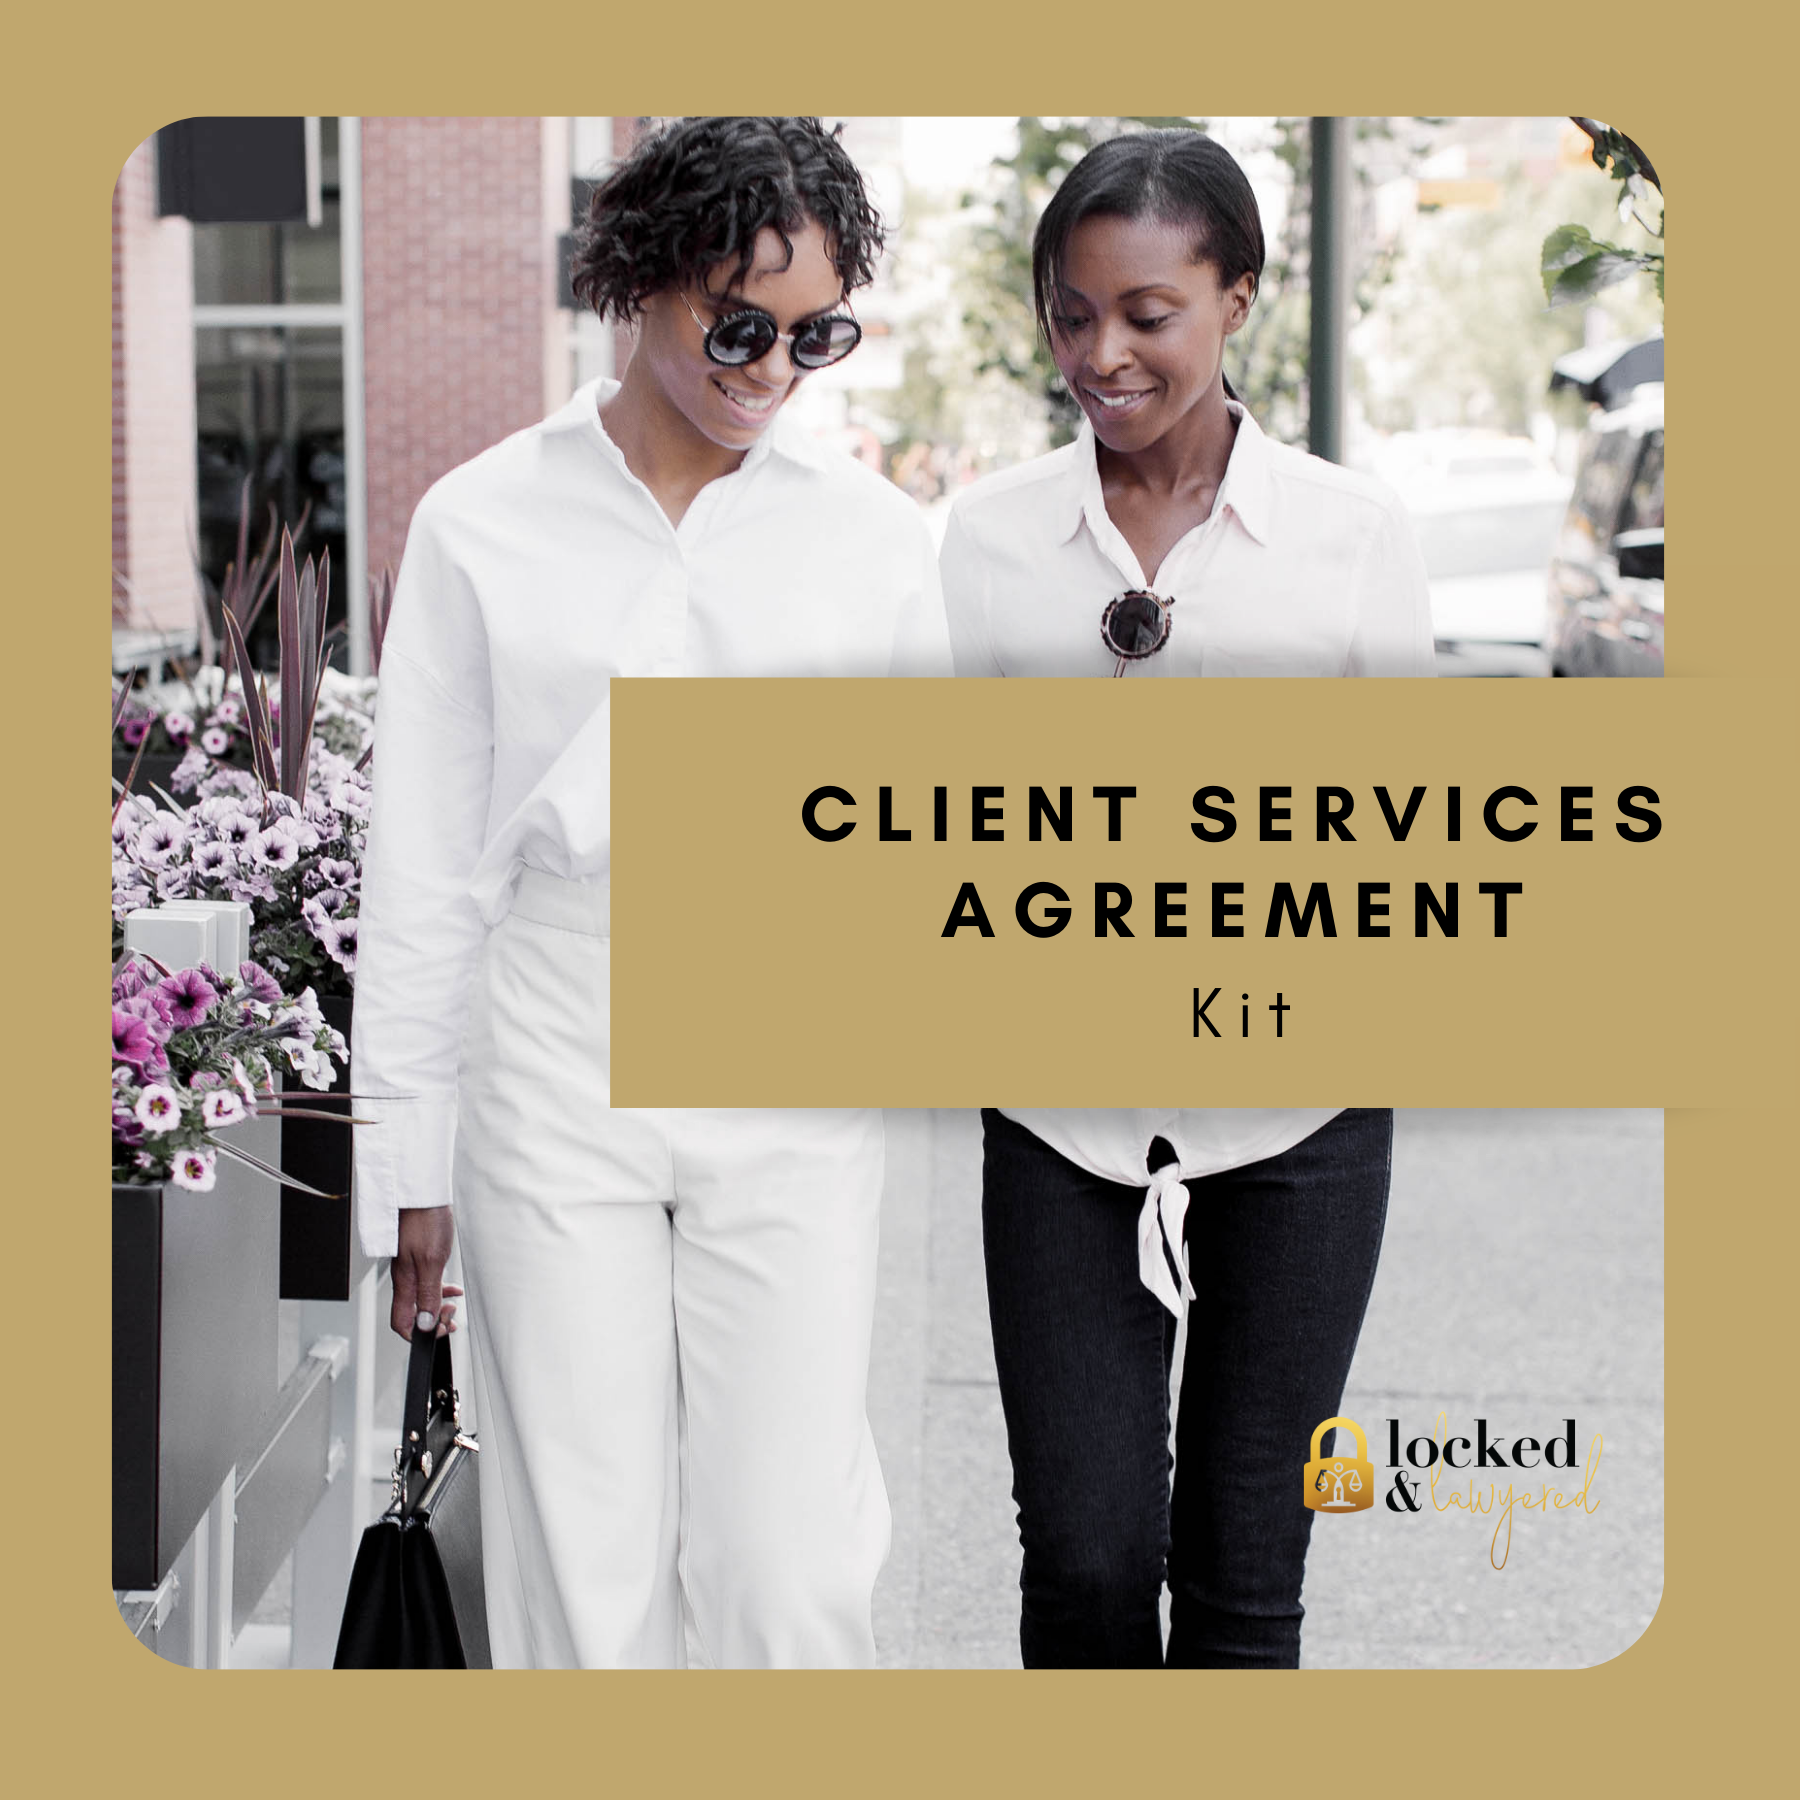 Client Services Agreement Kit